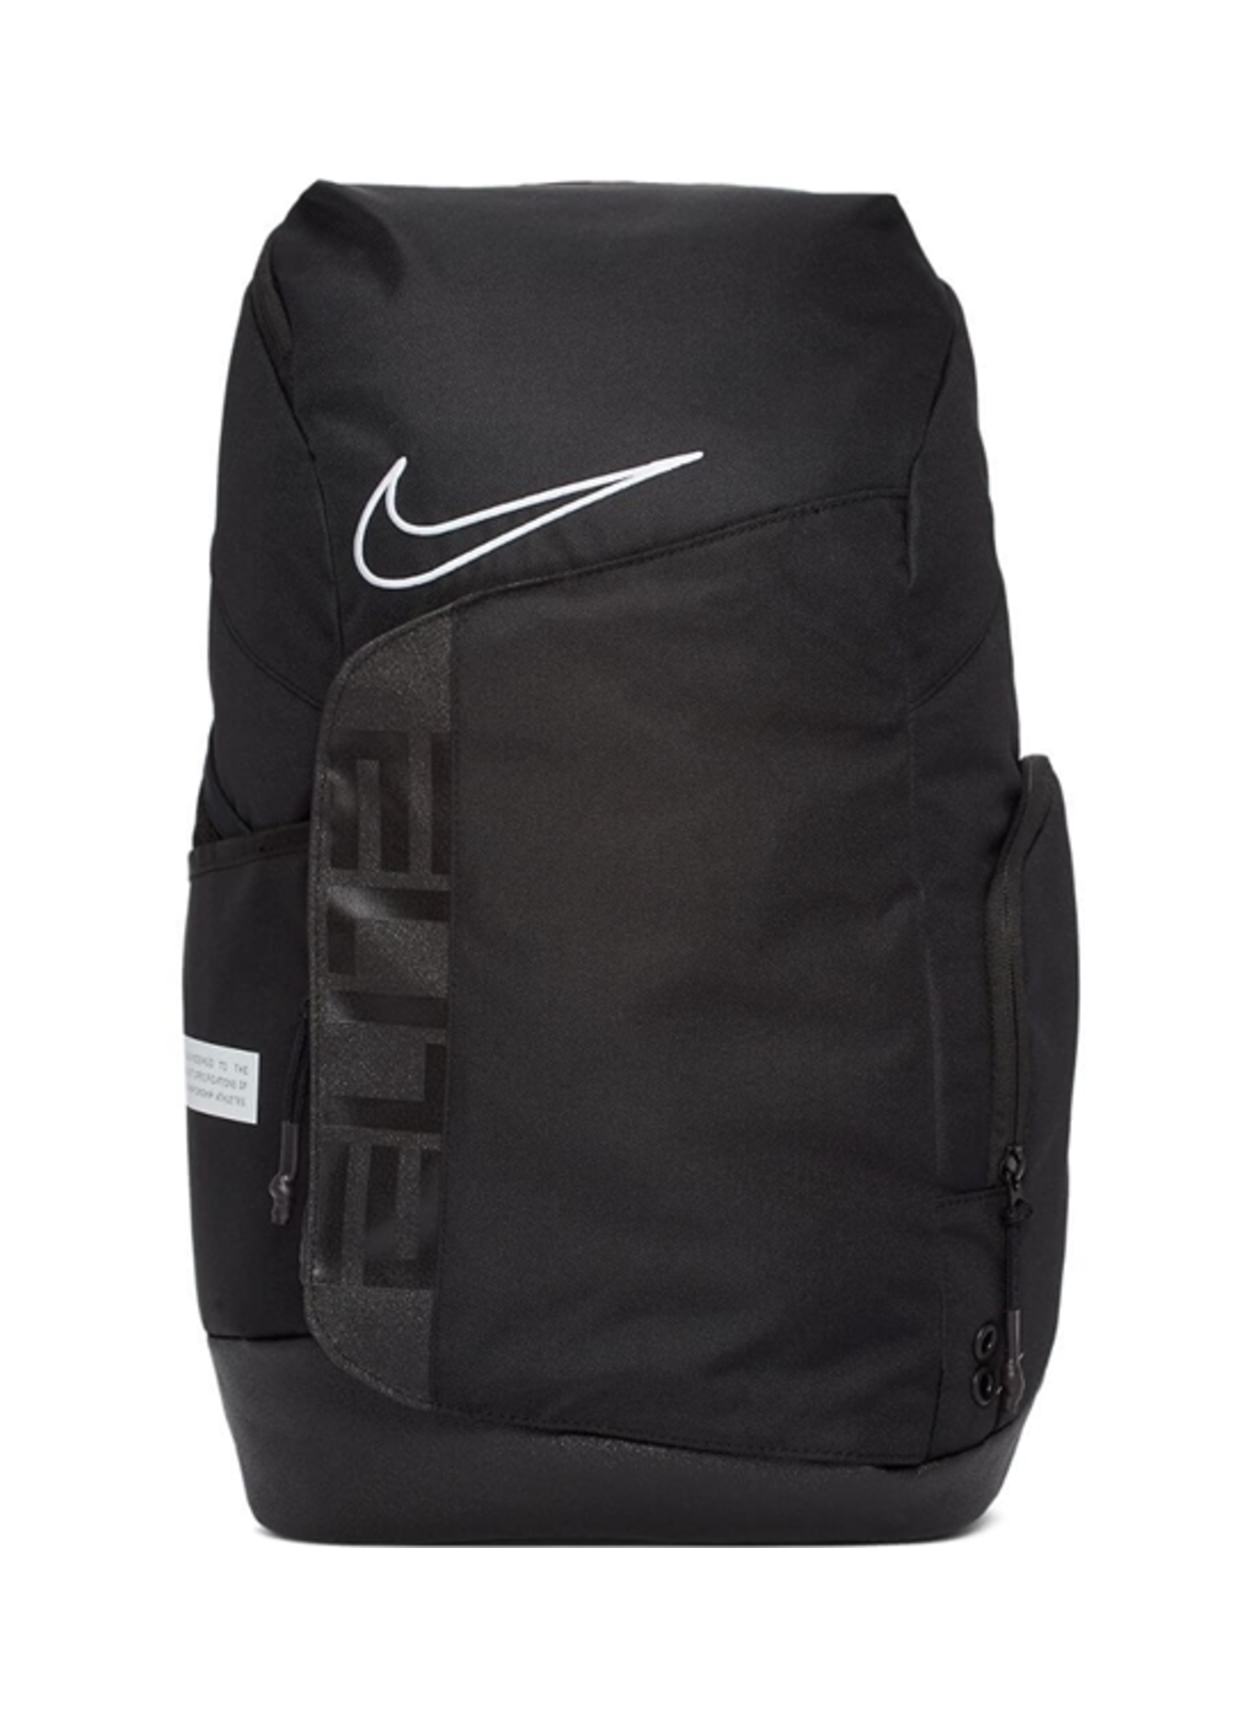 Elite Pro Backpack